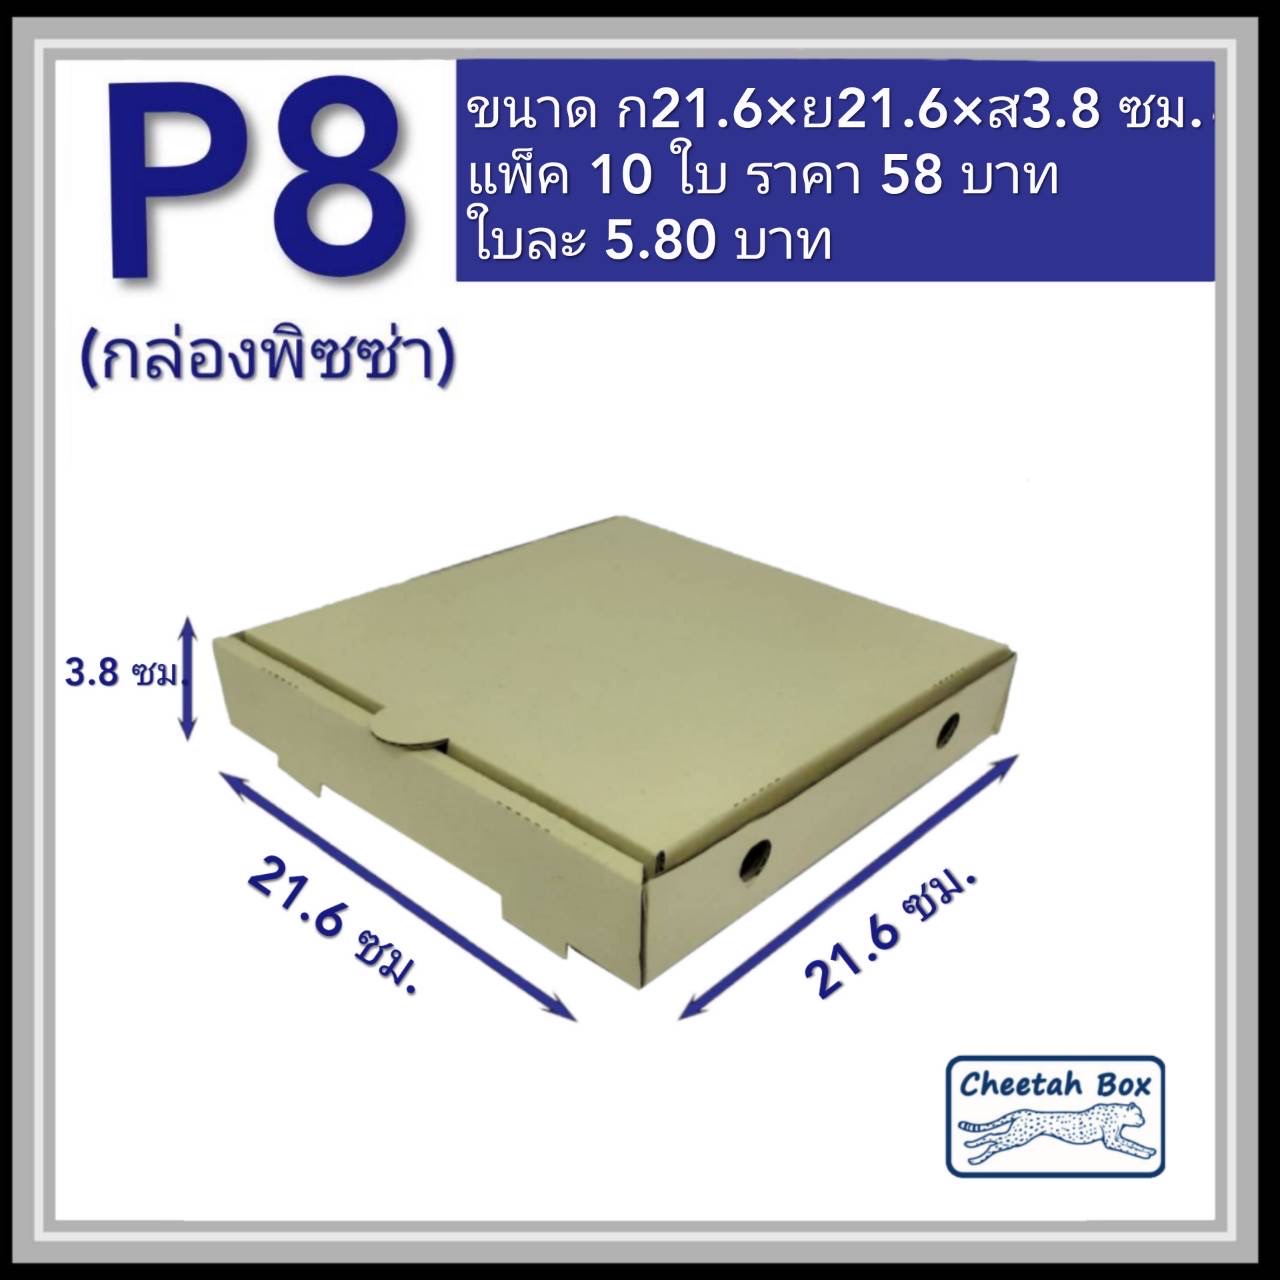 กล่องพิซซ่า 8 นิ้ว รหัส P8 ไม่พิมพ์ (Pizza Box) ขนาด 21.6W x 21.6L x 3.8H cm.